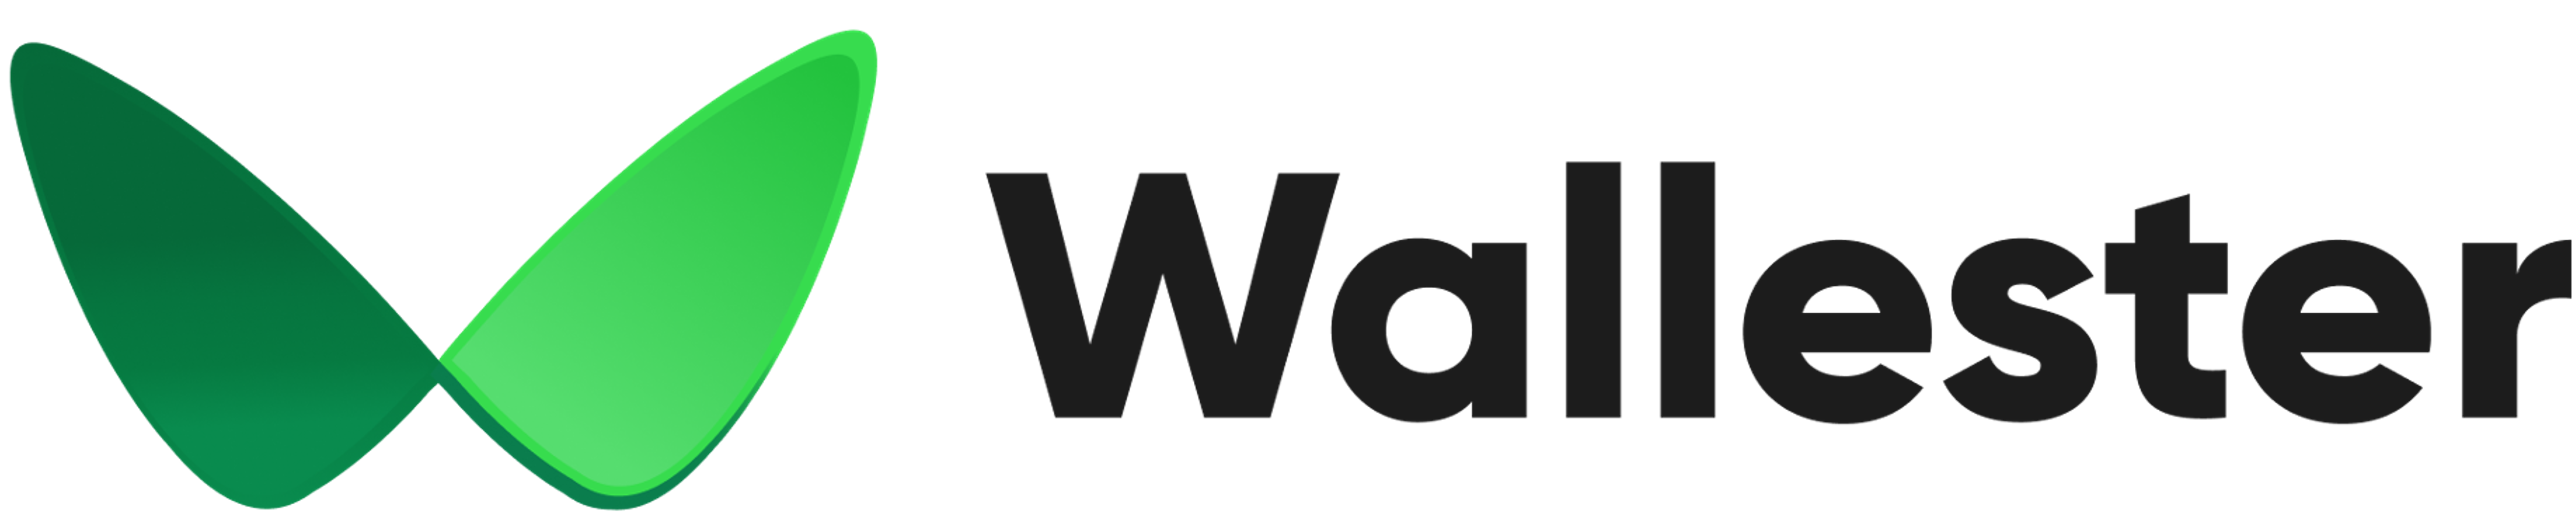 Wallester Company logo